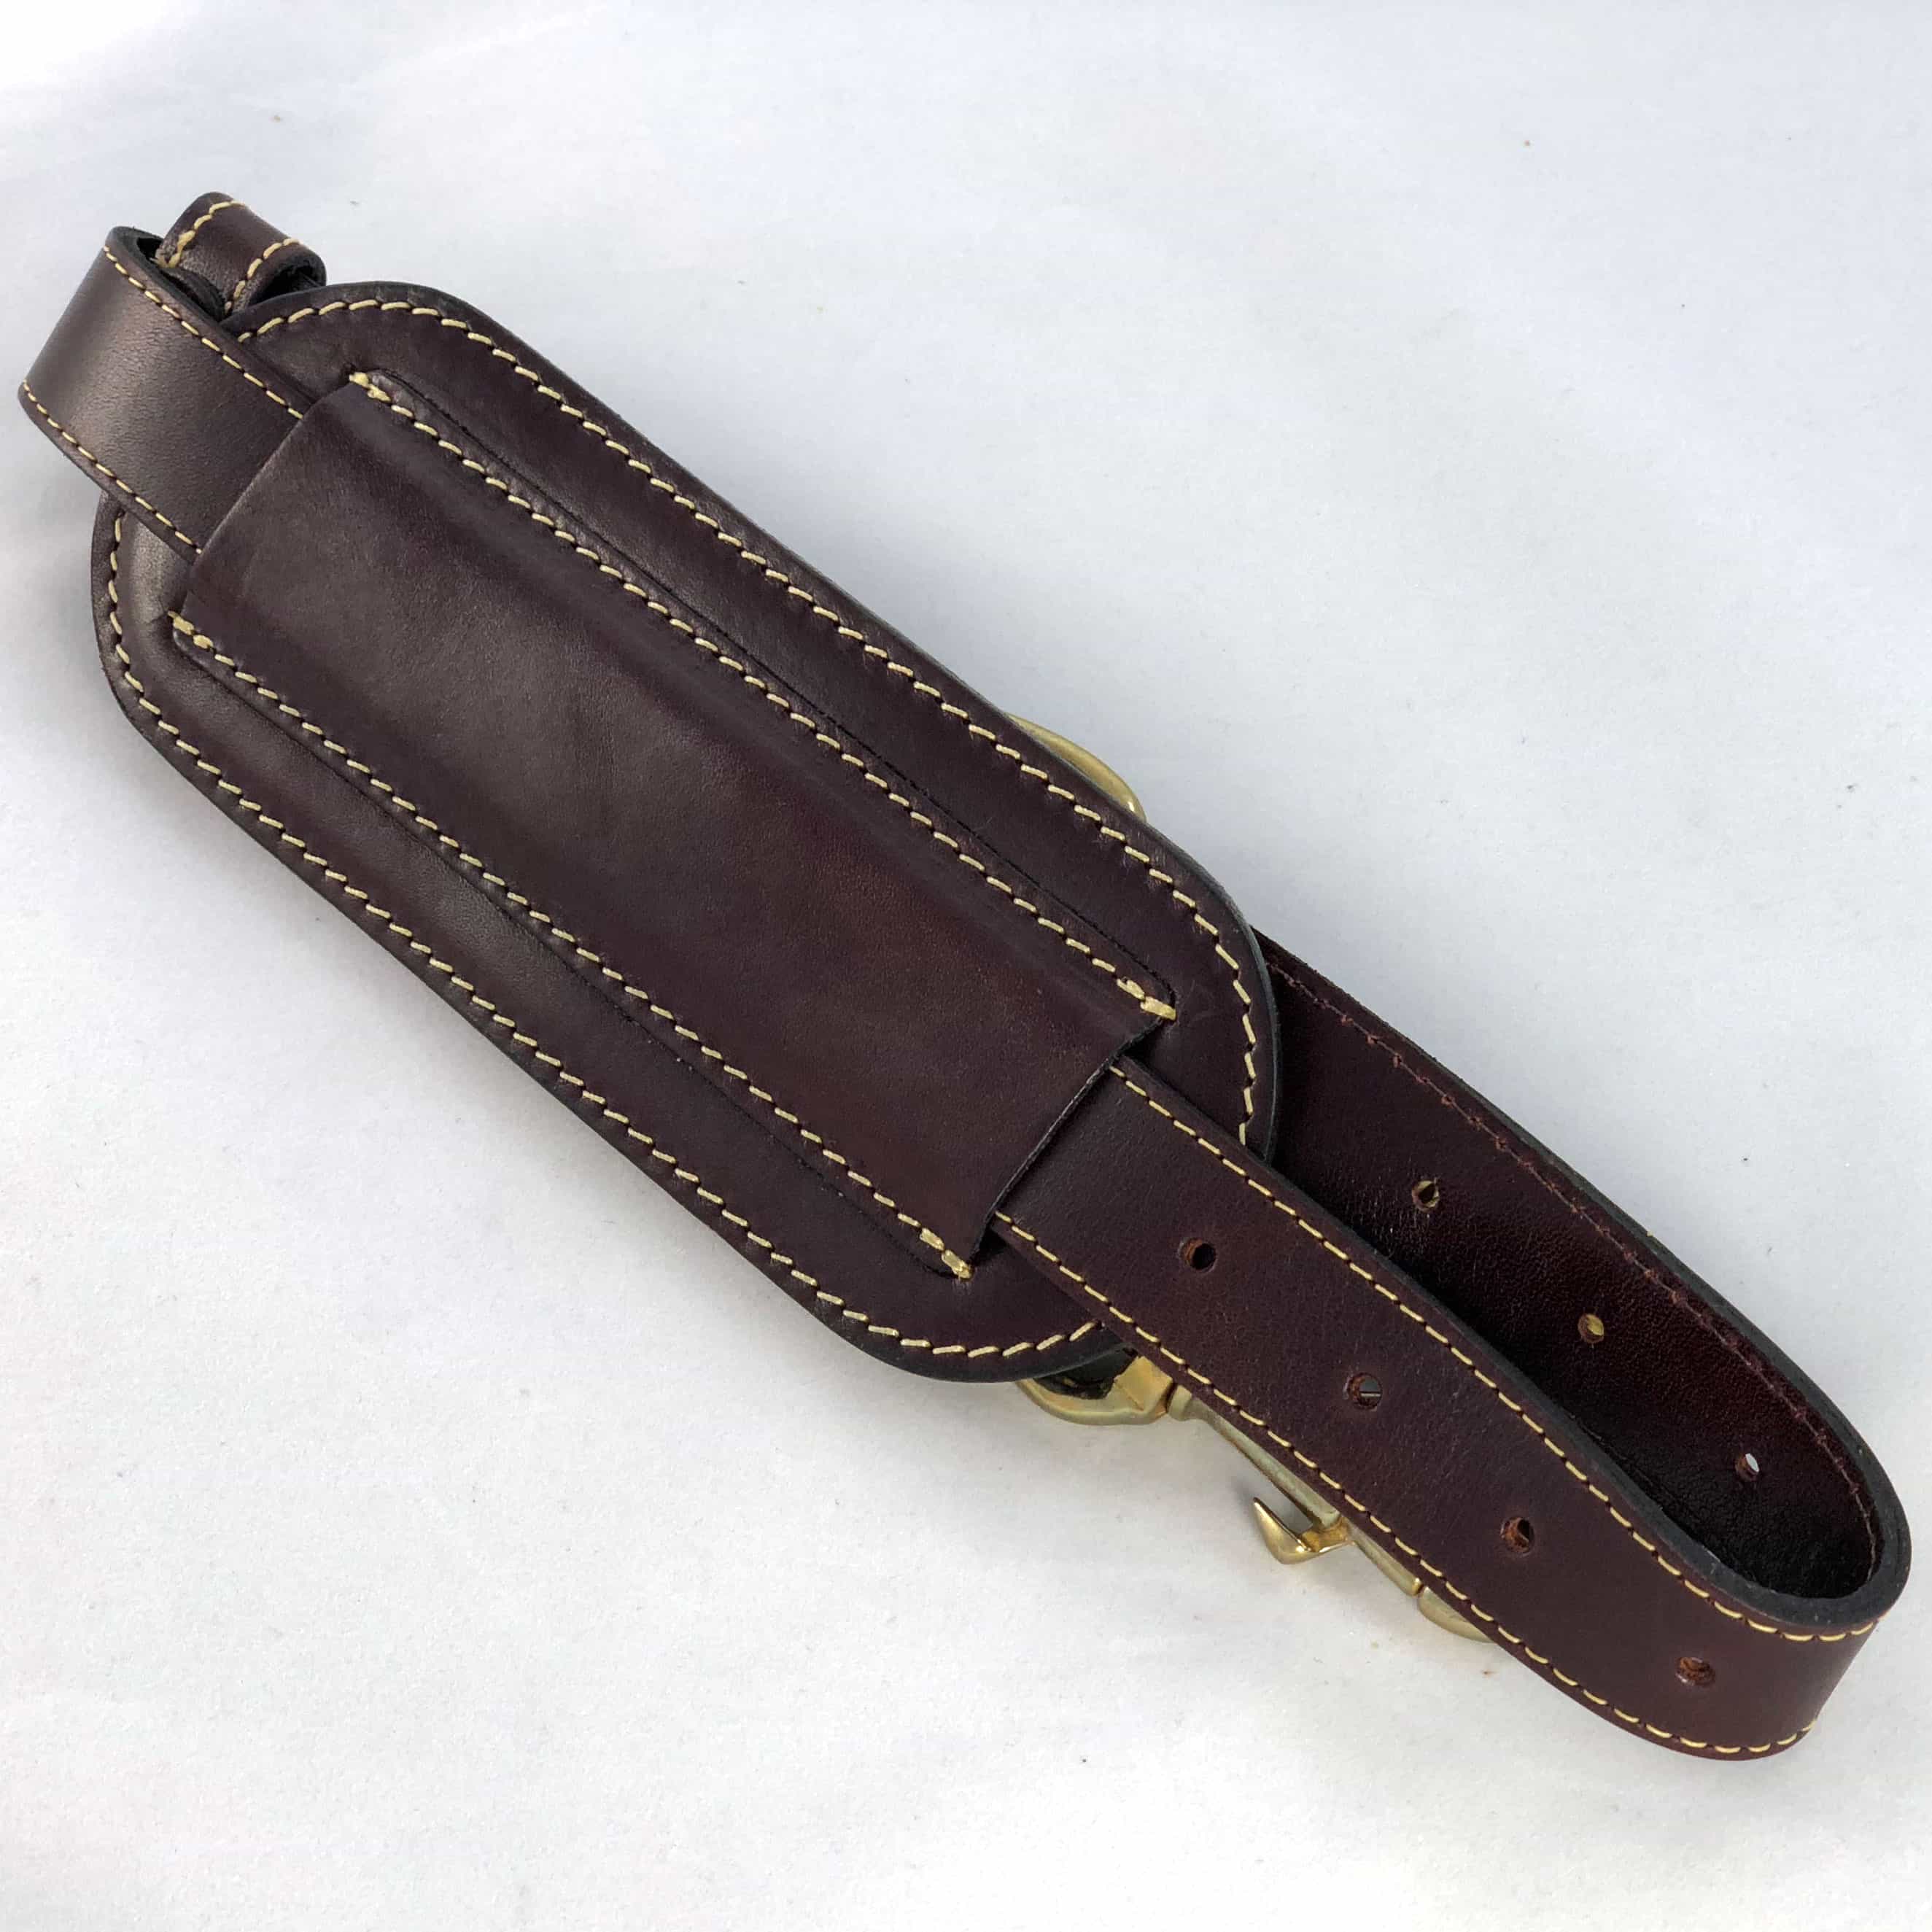 Burgundy leather shoulder strap flat showing shoulder pad